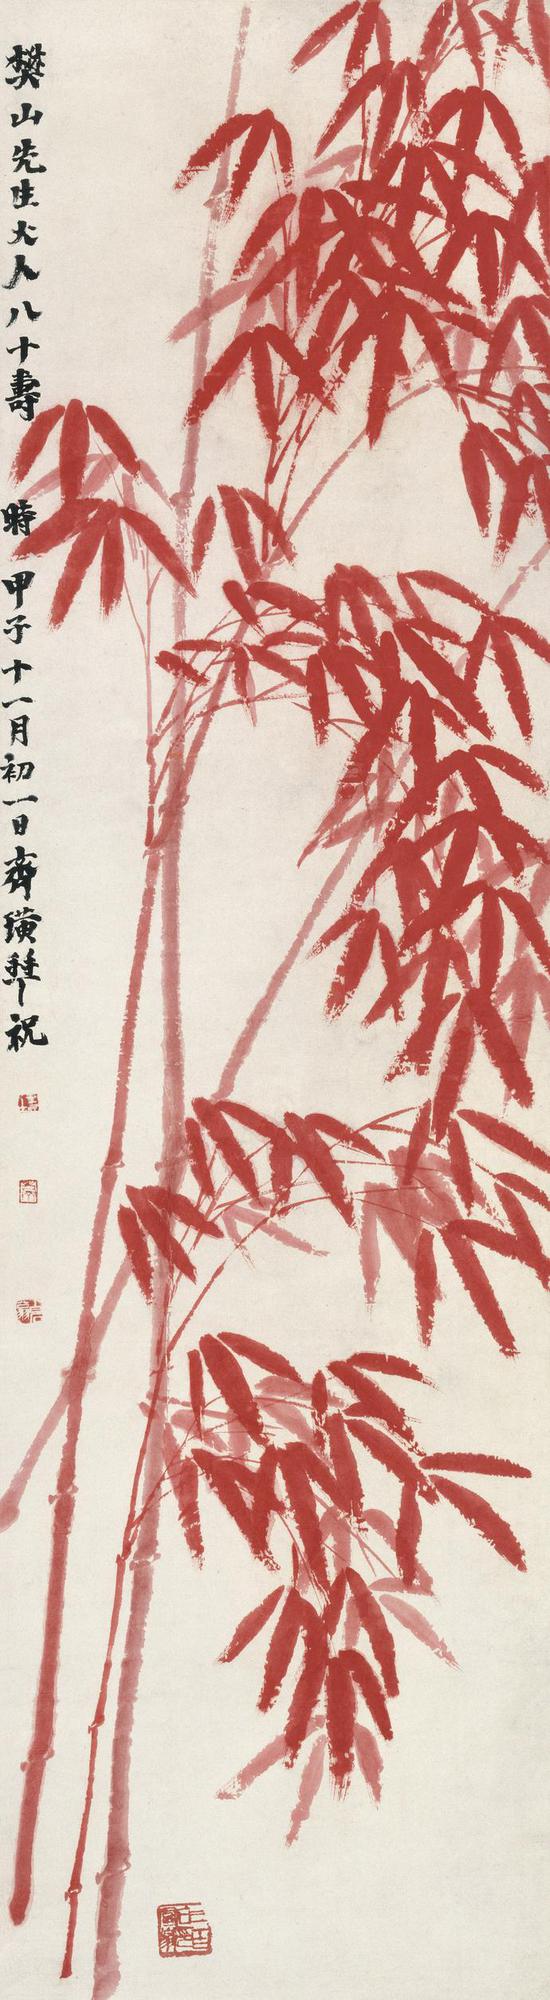 齐白石《朱竹》139.5×38.5cm 纸本设色 1924年 北京画院藏